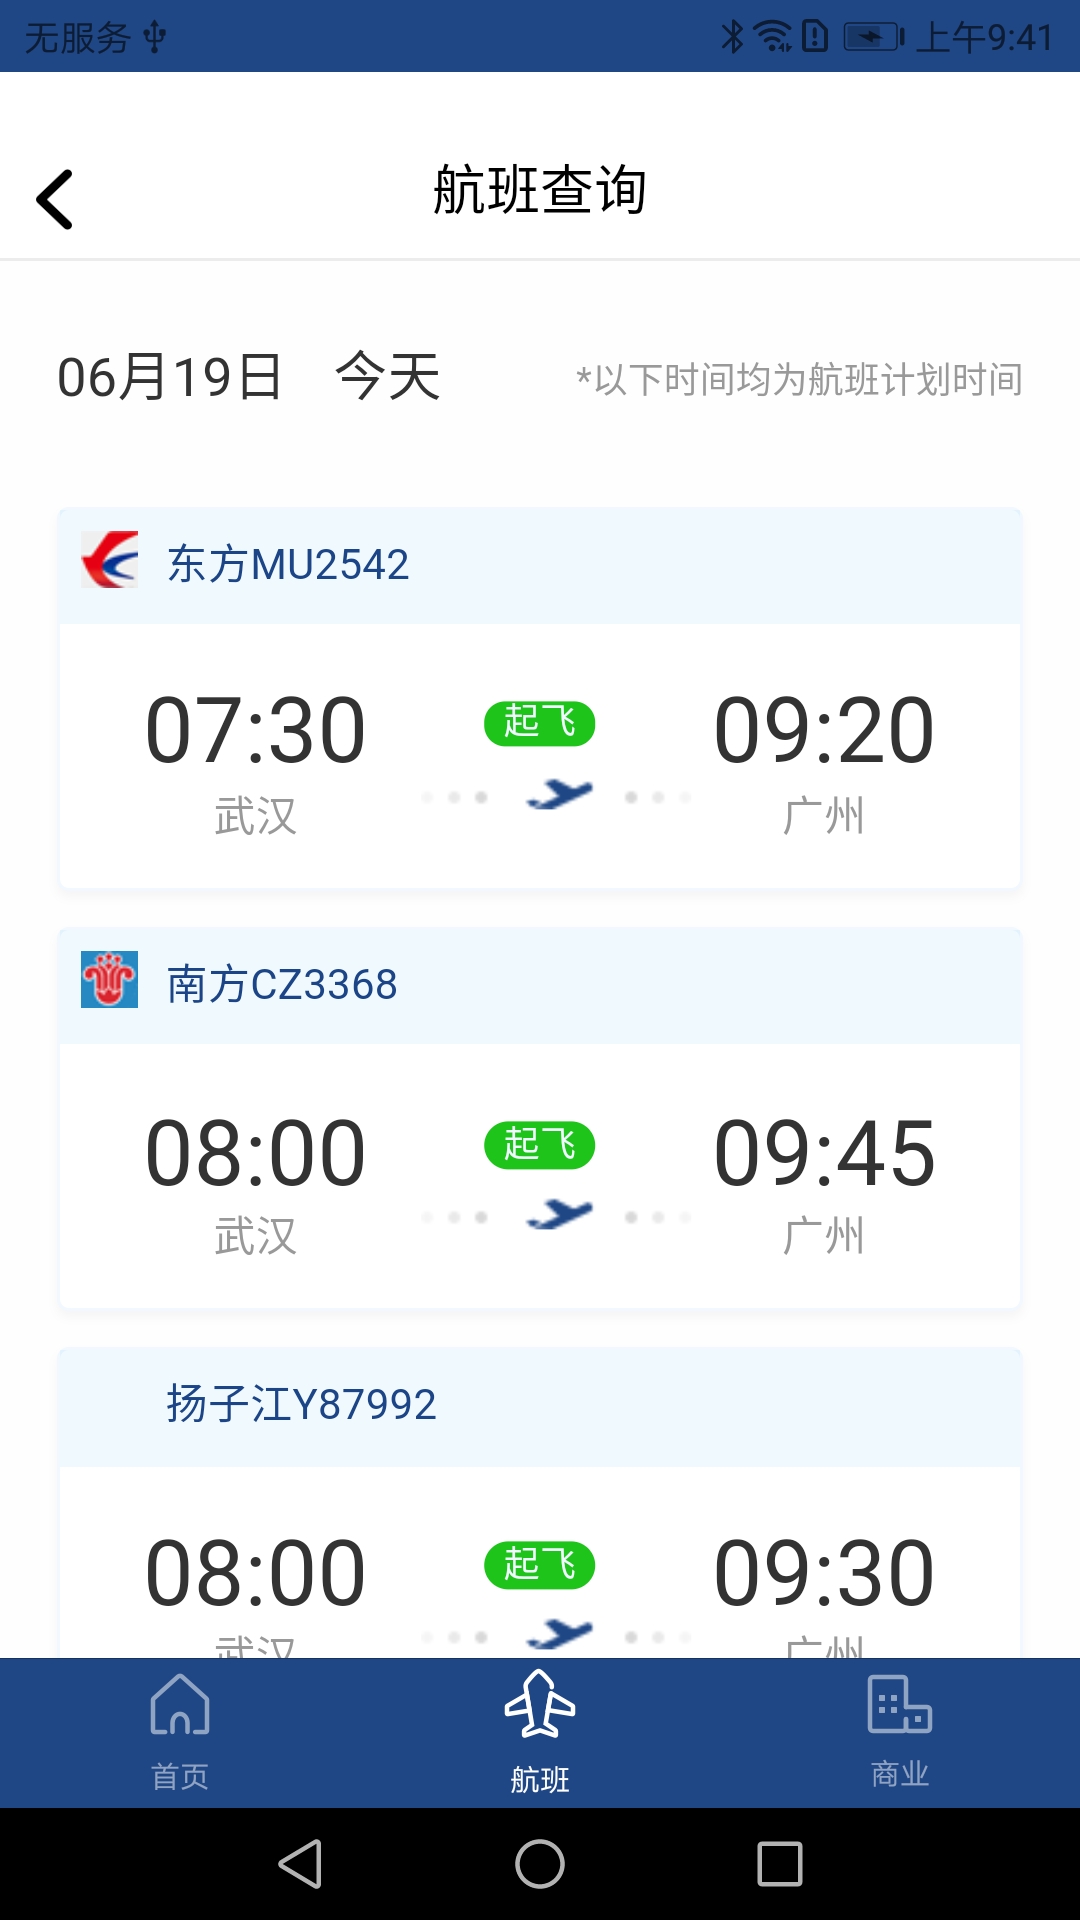 武汉机场航旅助手v1.0.0